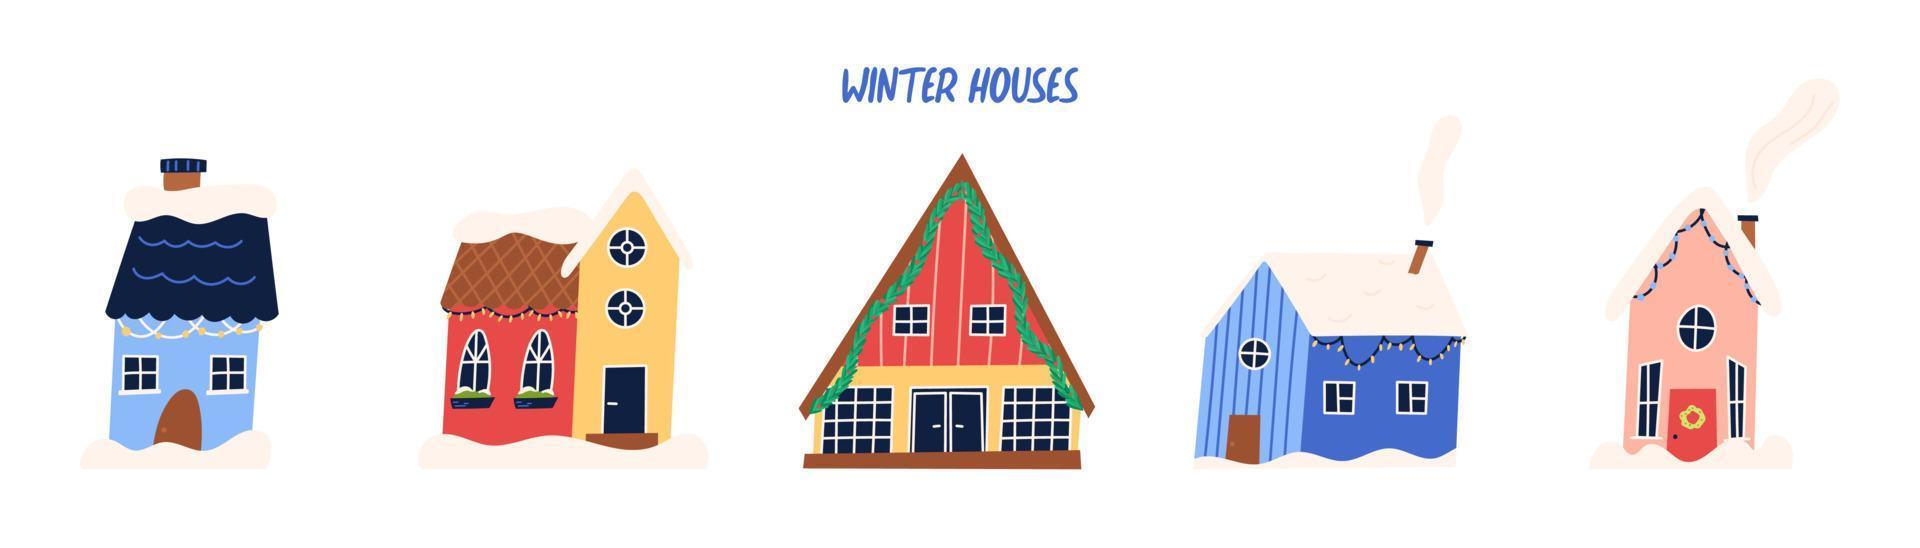 set di graziose case invernali con decorazioni natalizie, illustrazione vettoriale piatta isolata su sfondo bianco. esterno dell'edificio disegnato a mano nella neve.